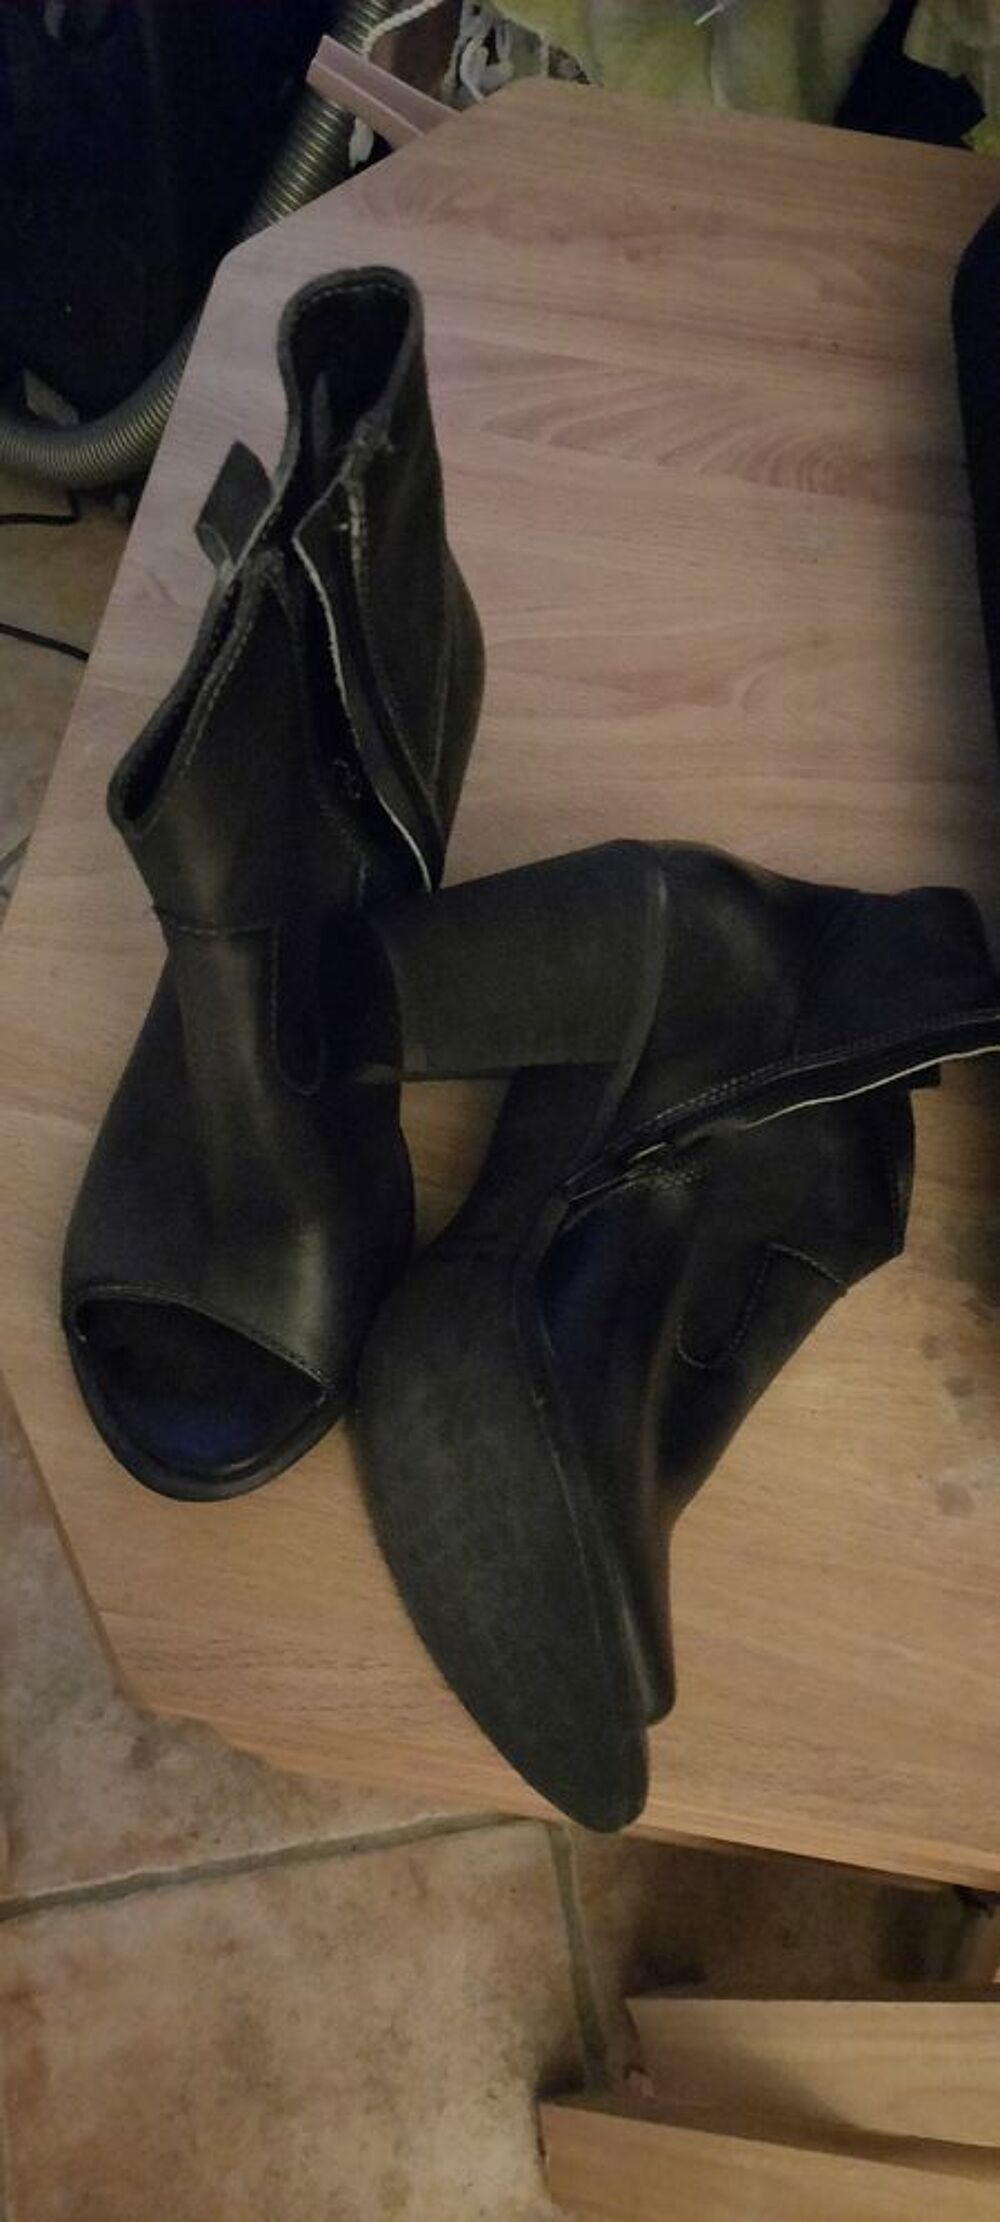 Bottines cuir noire marque italienne ouvertes sur le devant. Chaussures